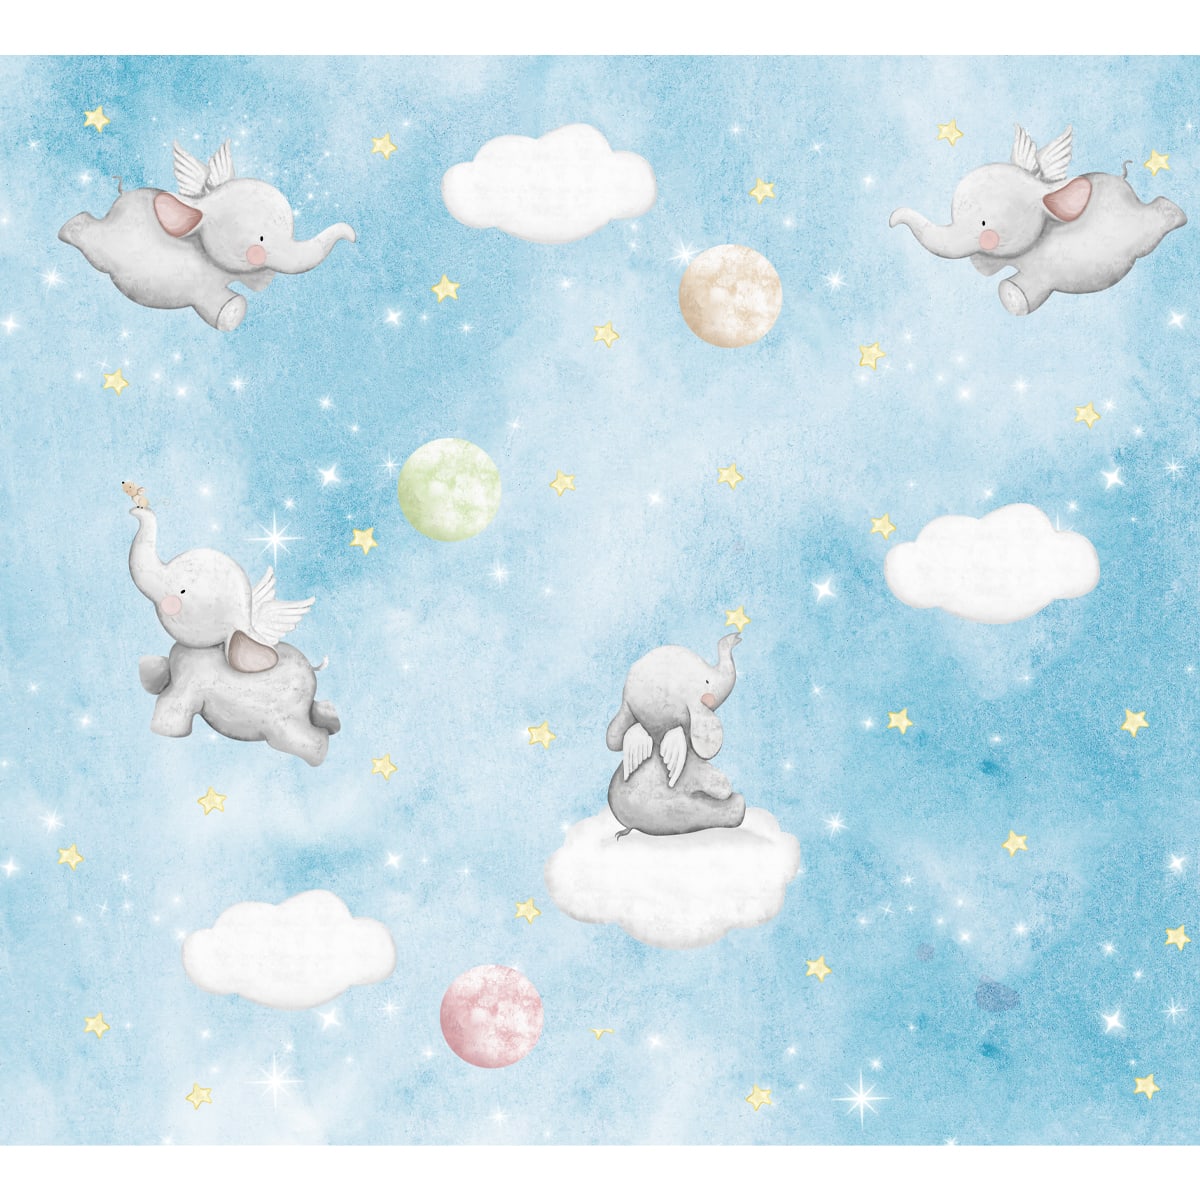 Cute Elephants on Clouds in Starry Night, Kids Wallpaper